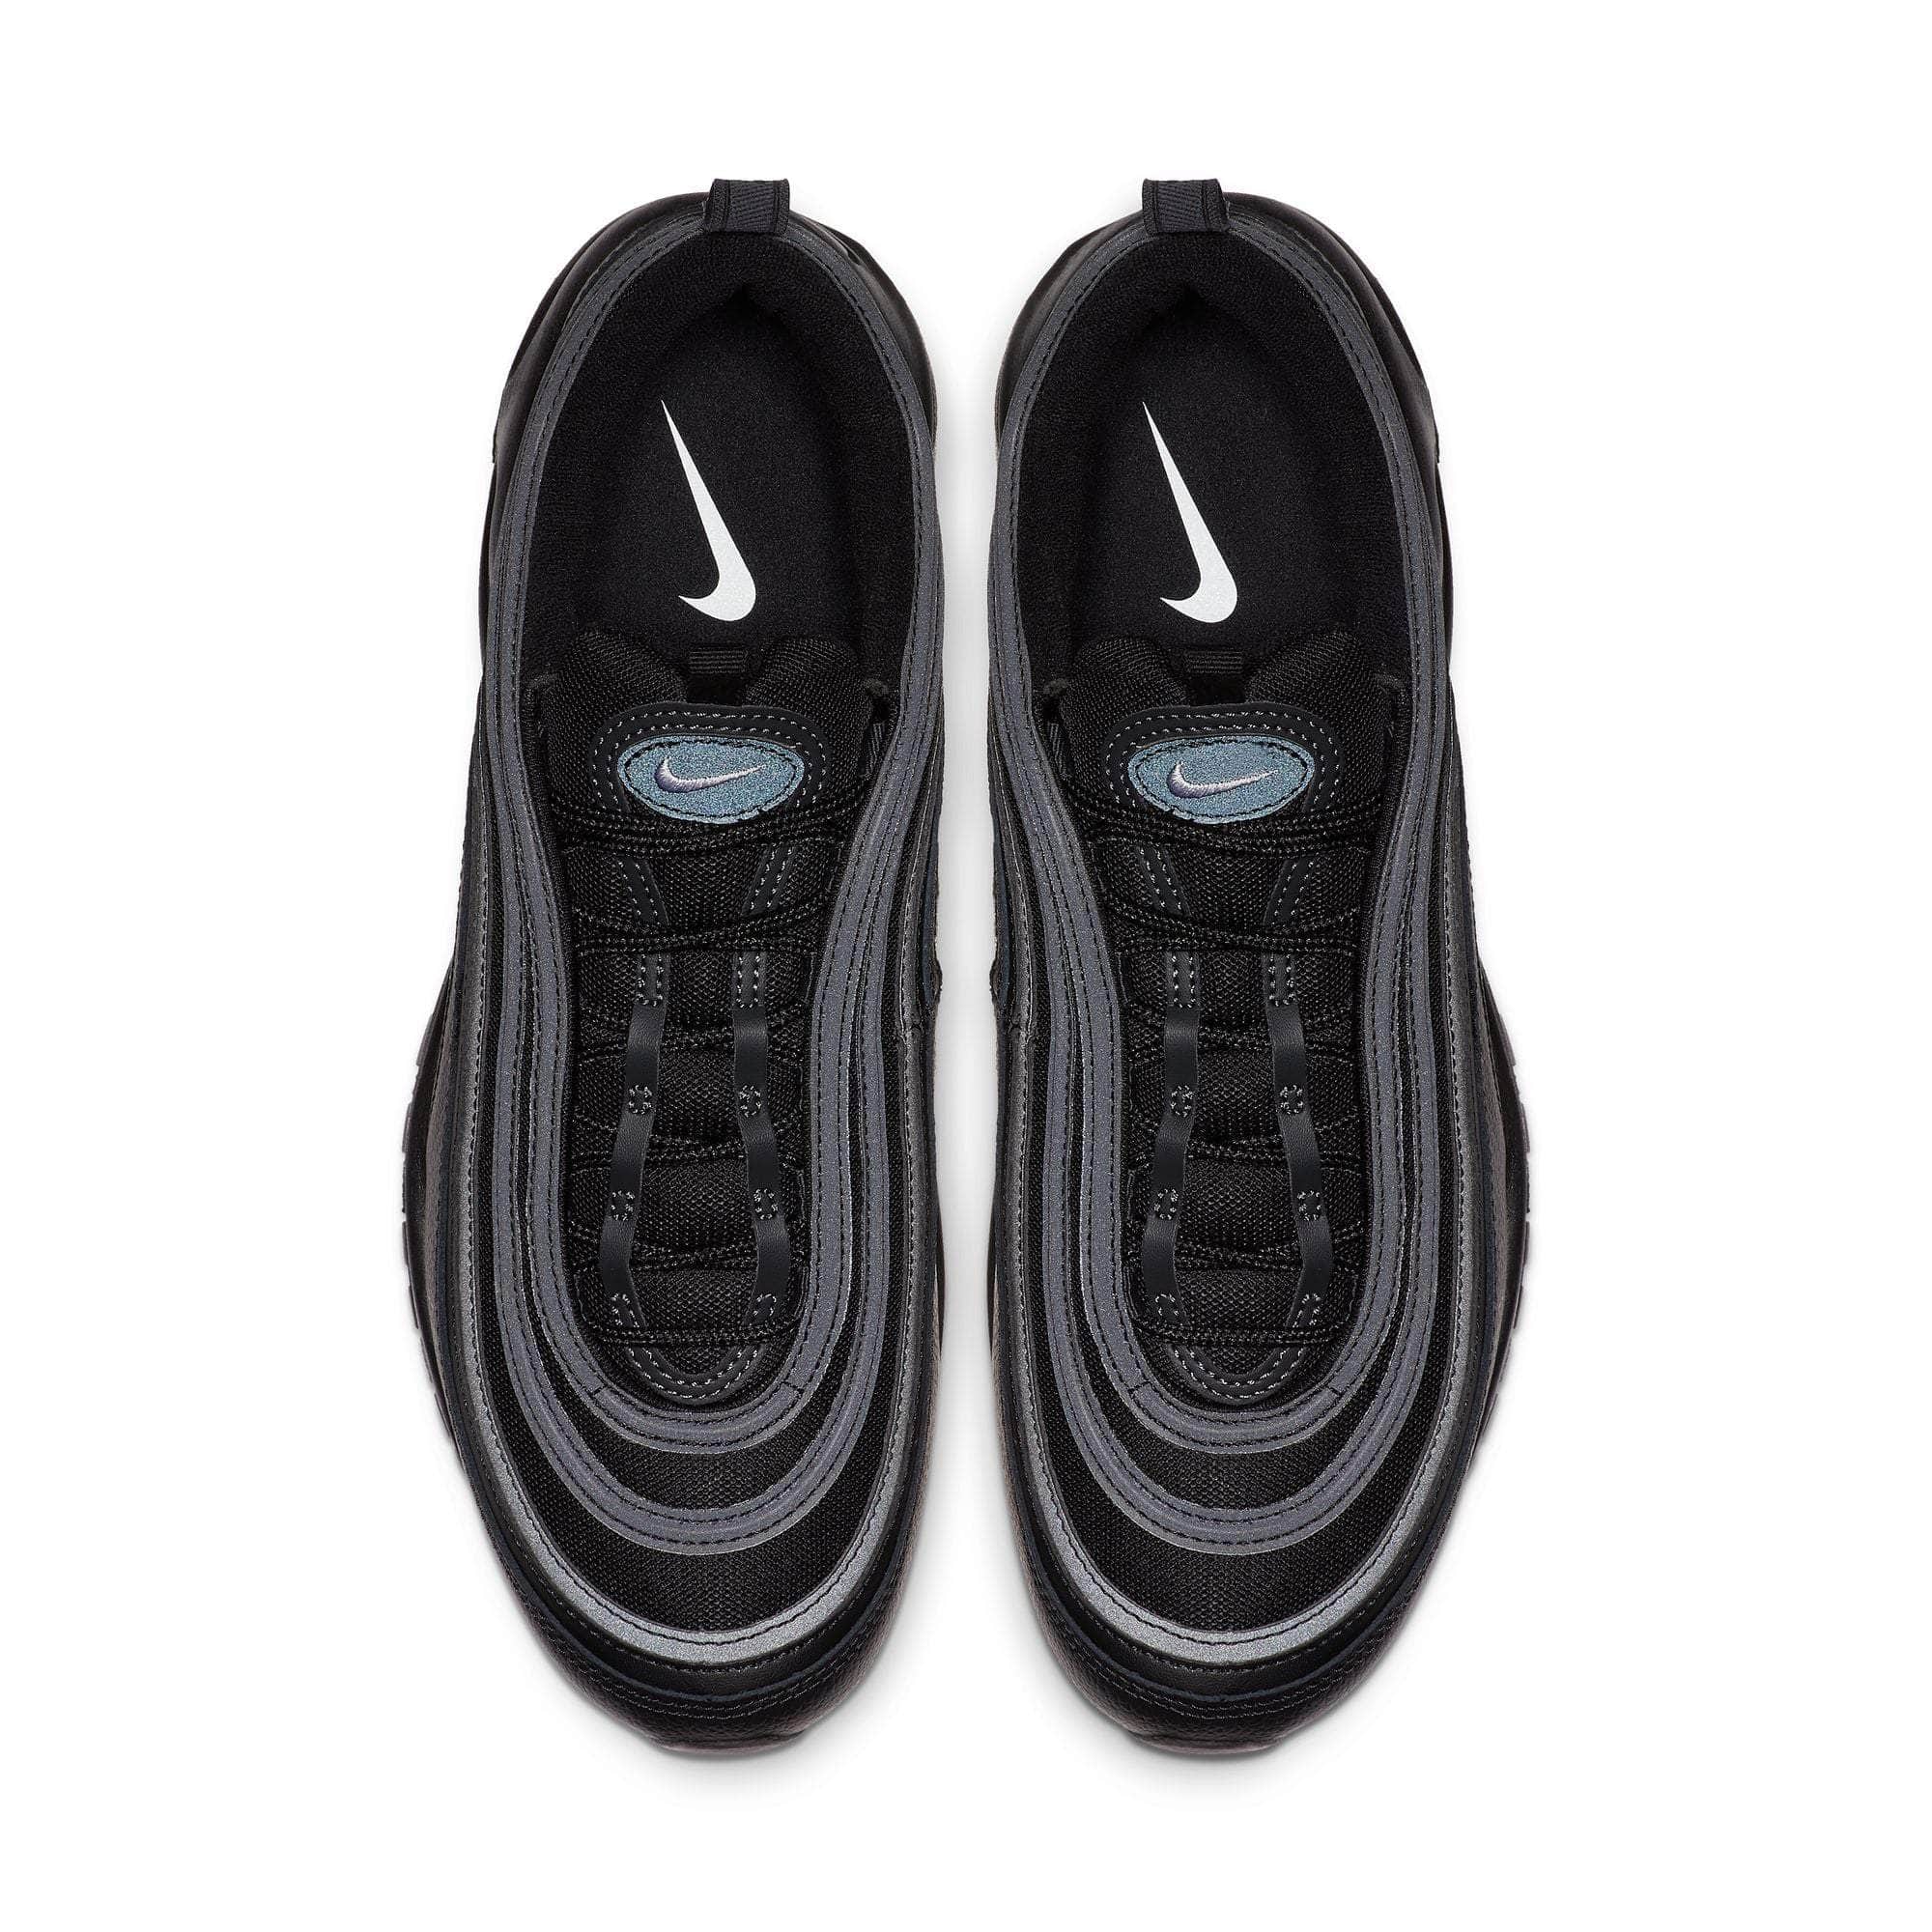 Nike Air Max 97 Sneakers in Triple Black